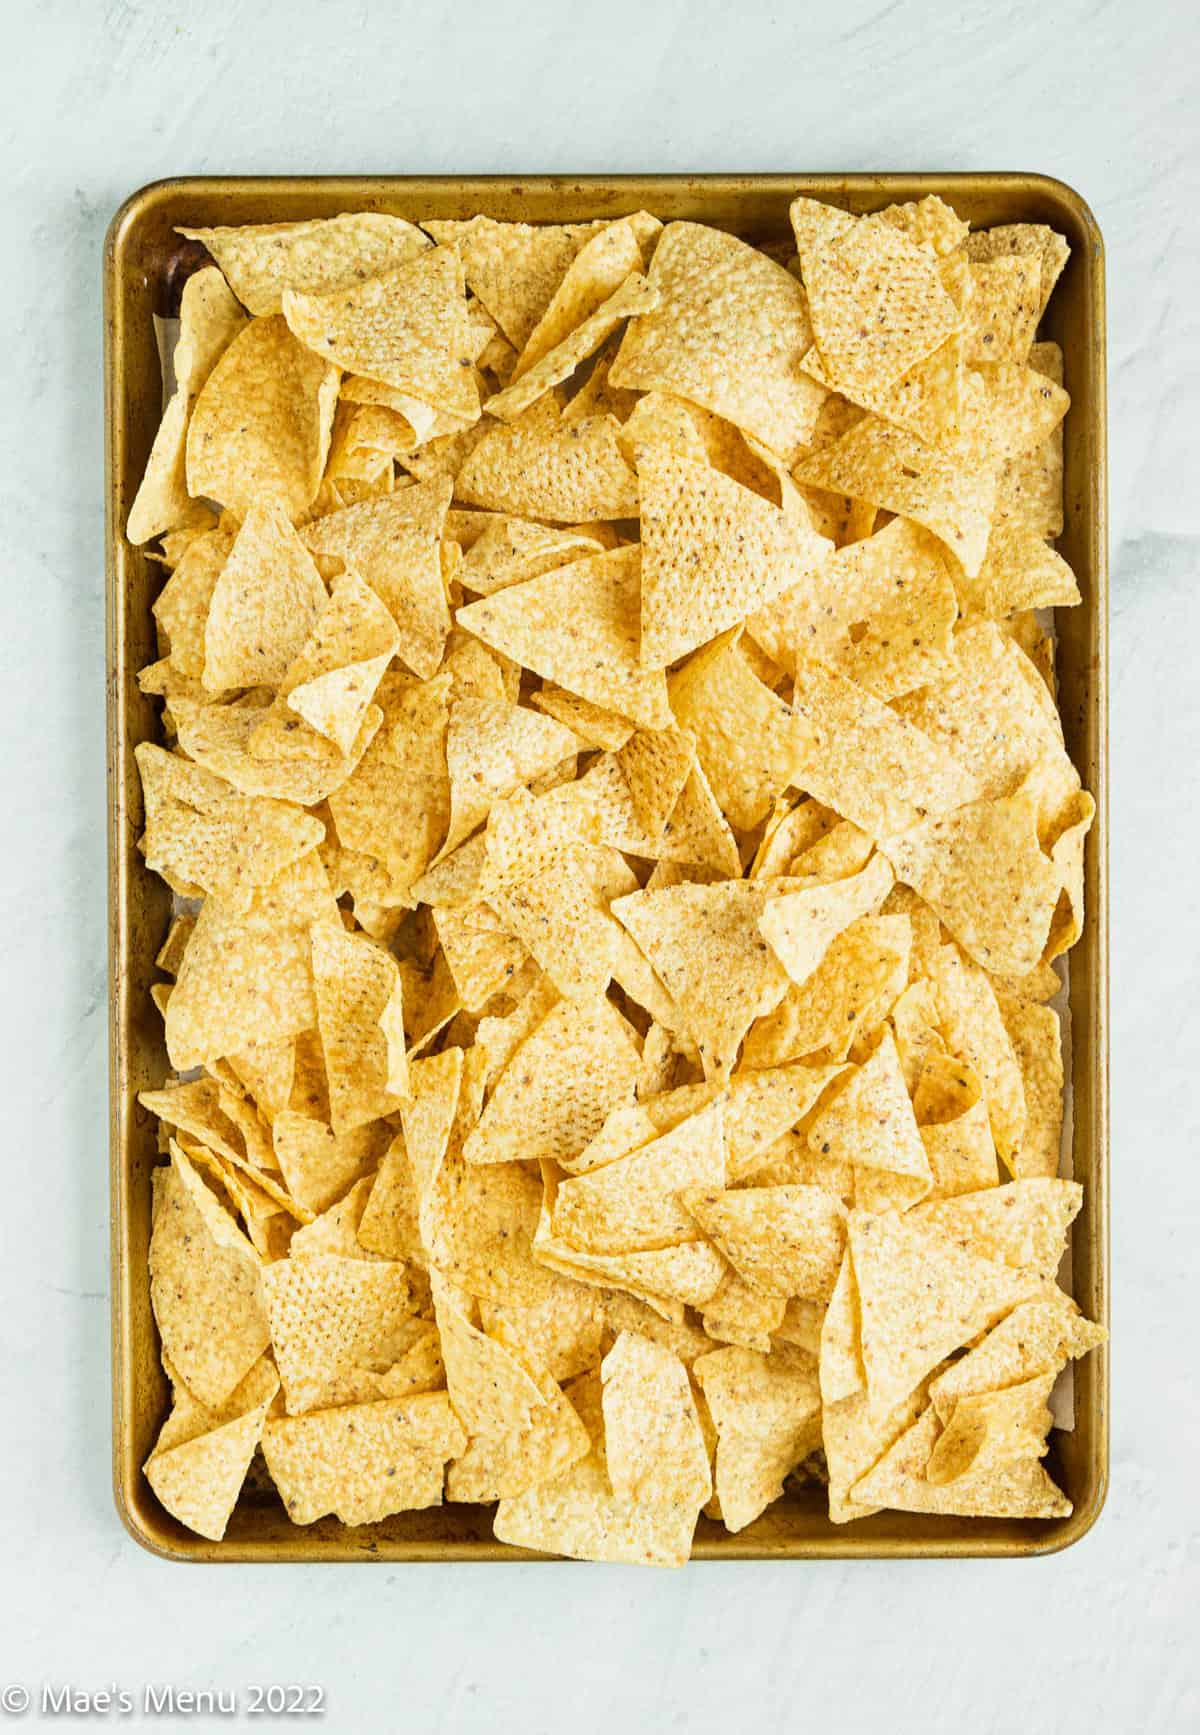 A baking sheet of tortilla chips.